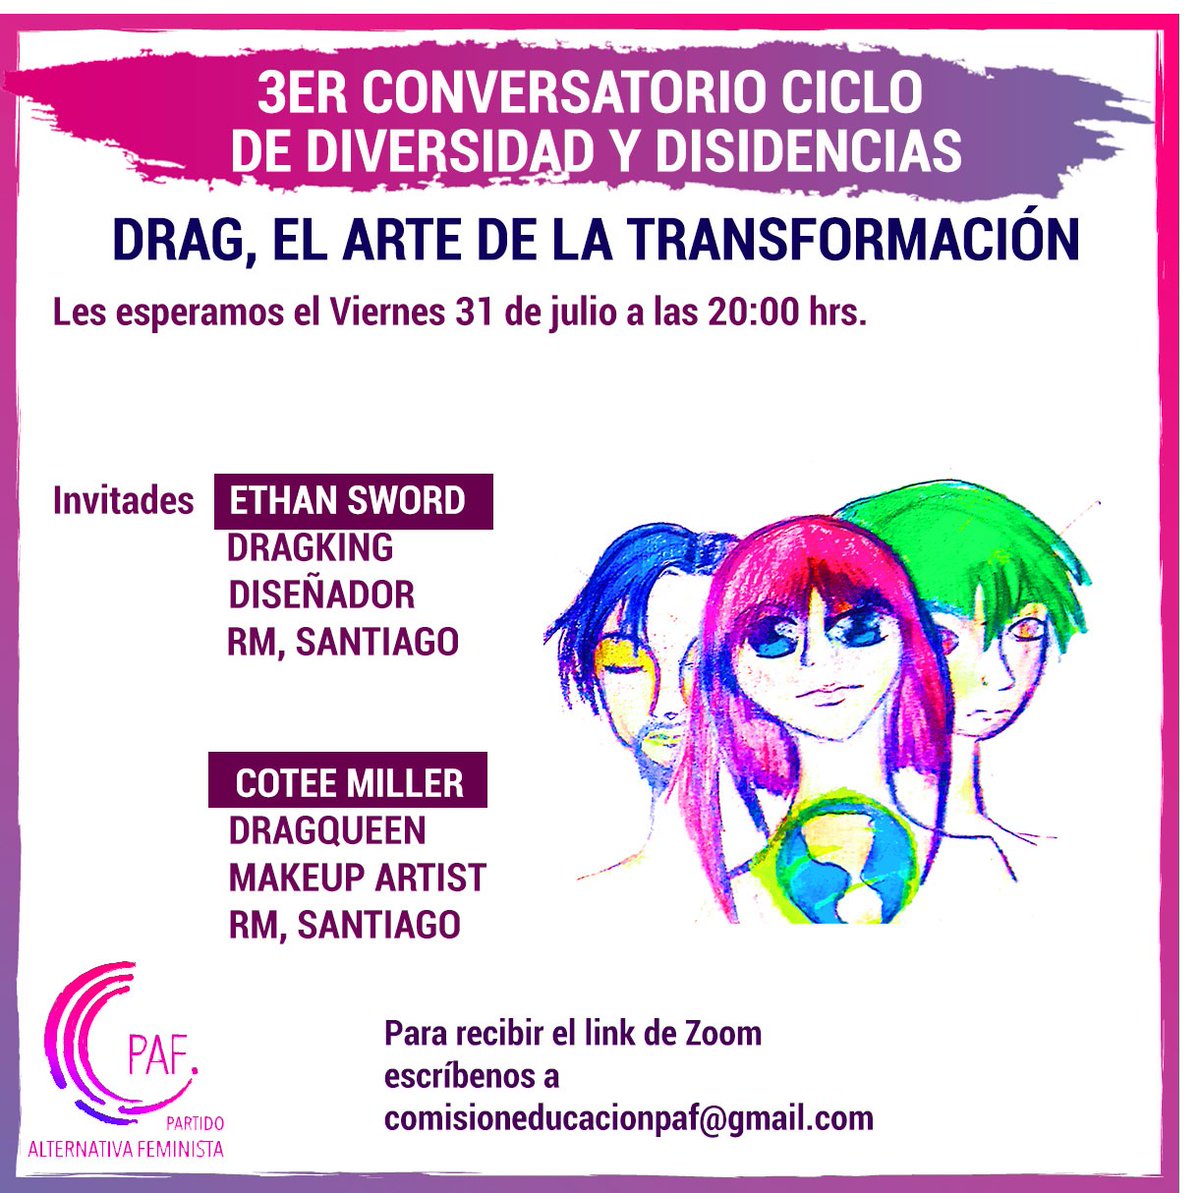 Conversatorio este viernes a las 20:00 hrs. 
Dragking y Dragqueen nos hablarán de 'El Arte de la Transformación'
#ÚneteAlPAF 
#Feminismo
#PAF
#Inclusión
#AlternativaFeminista 
Favor RT